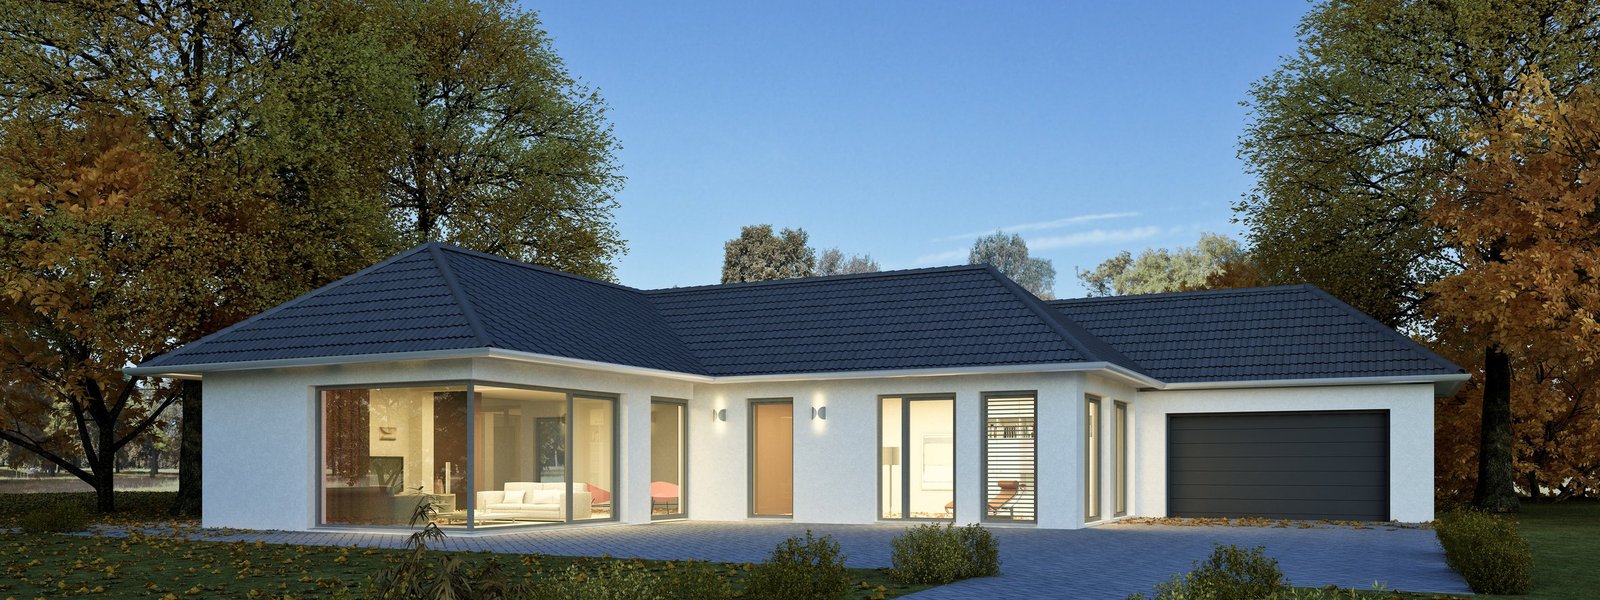 Ihr Bungalow als Massivhaus von Ihrer Hausbaufirma aus Rostock, der MV Projekthaus